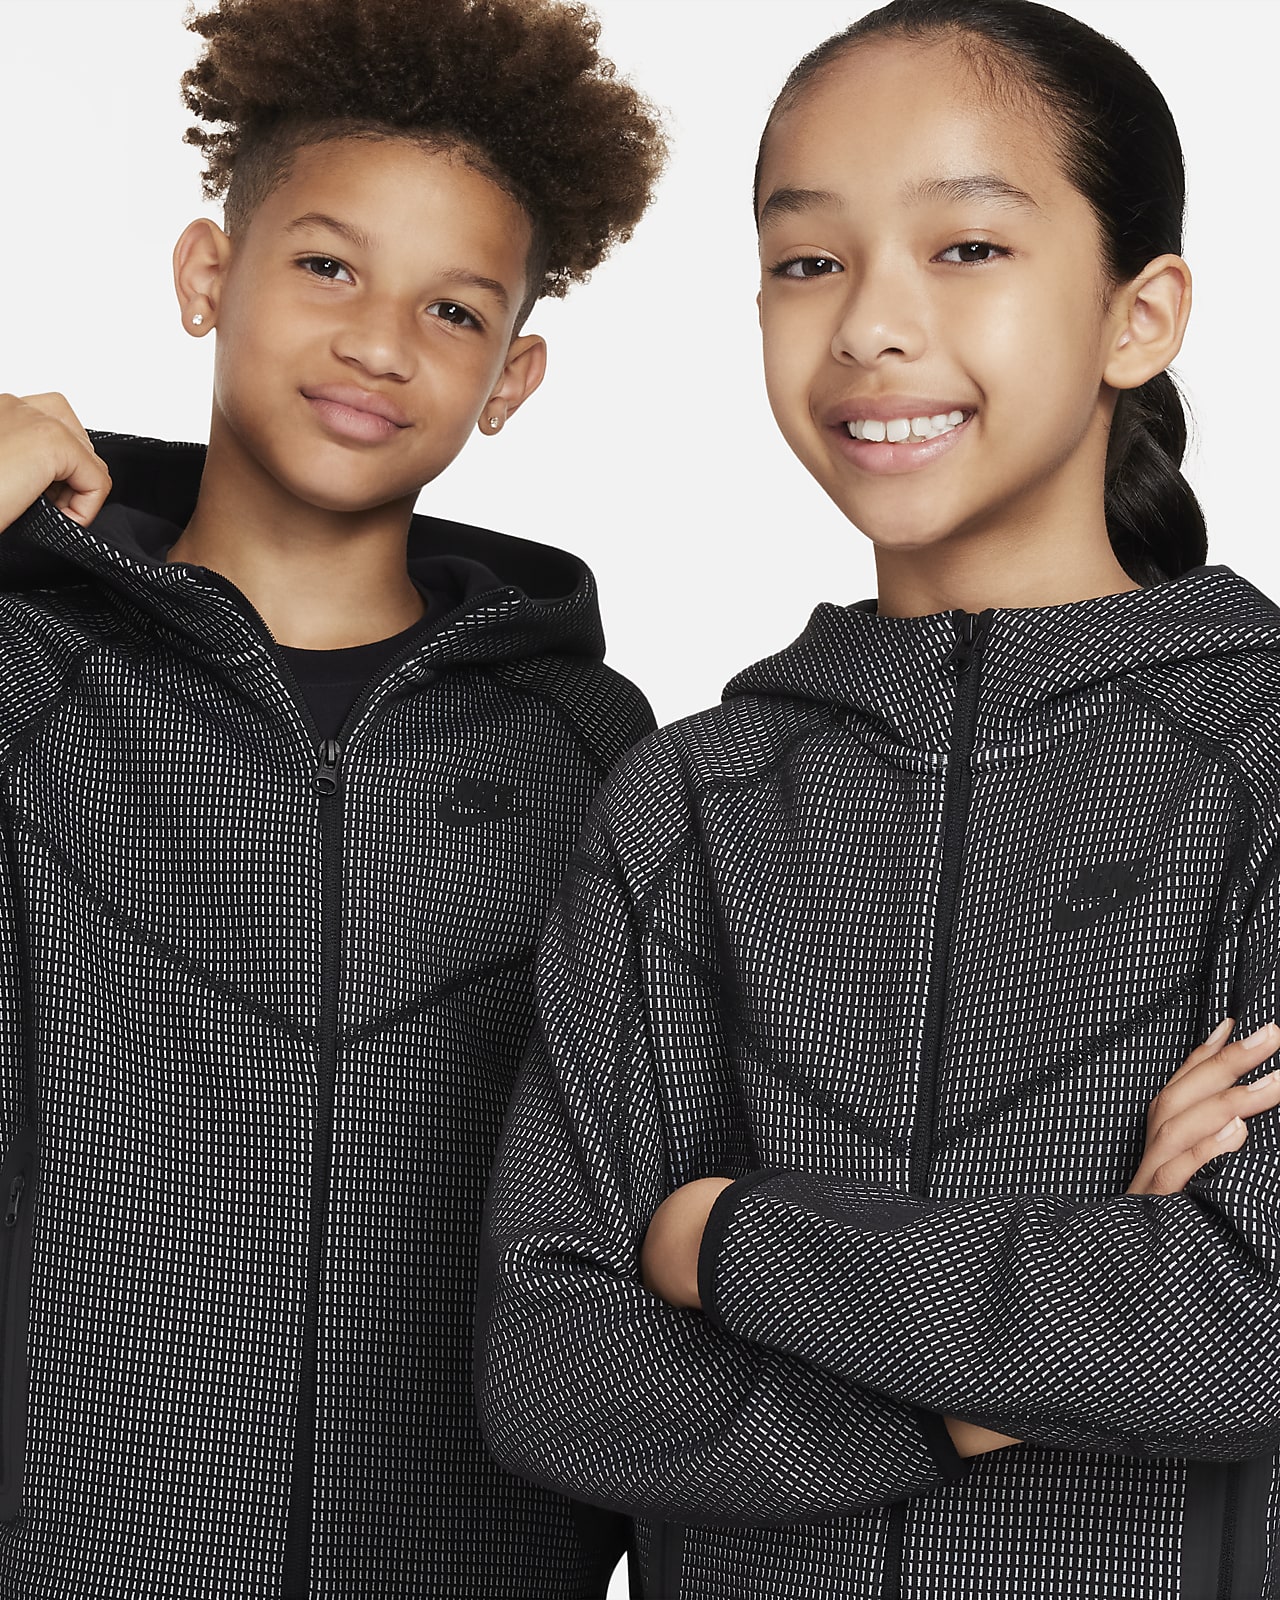 Nike Sportswear Tech Fleece Older Kids' (Boys') Trousers (Extended Size).  Nike LU